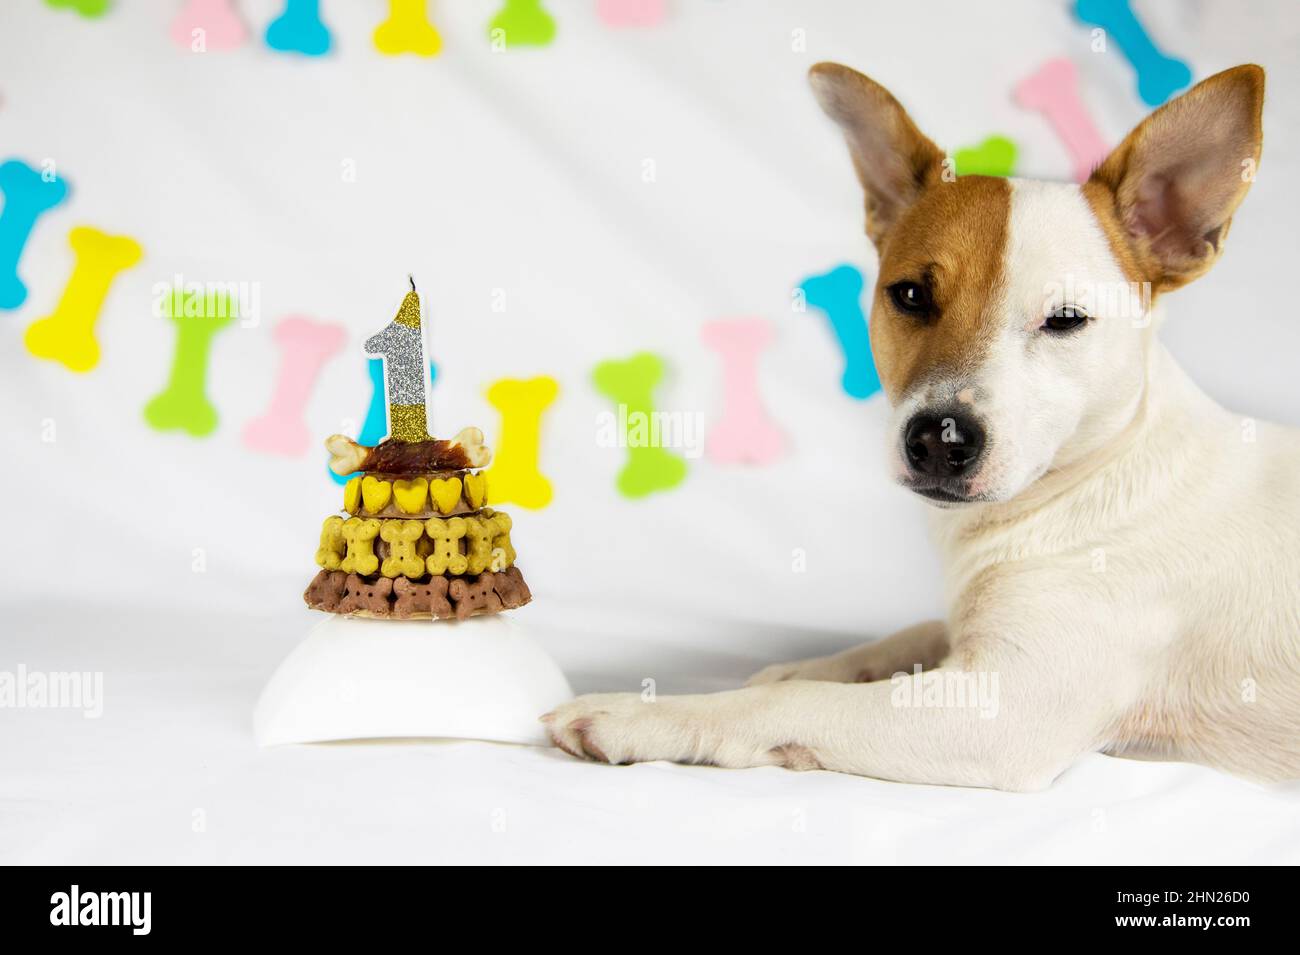 Un cane di razza Jack Russell Terrier si trova su uno sfondo bianco con una ghirlanda in forma di ossa accanto alla sua torta di compleanno, decorato con bo giallo Foto Stock